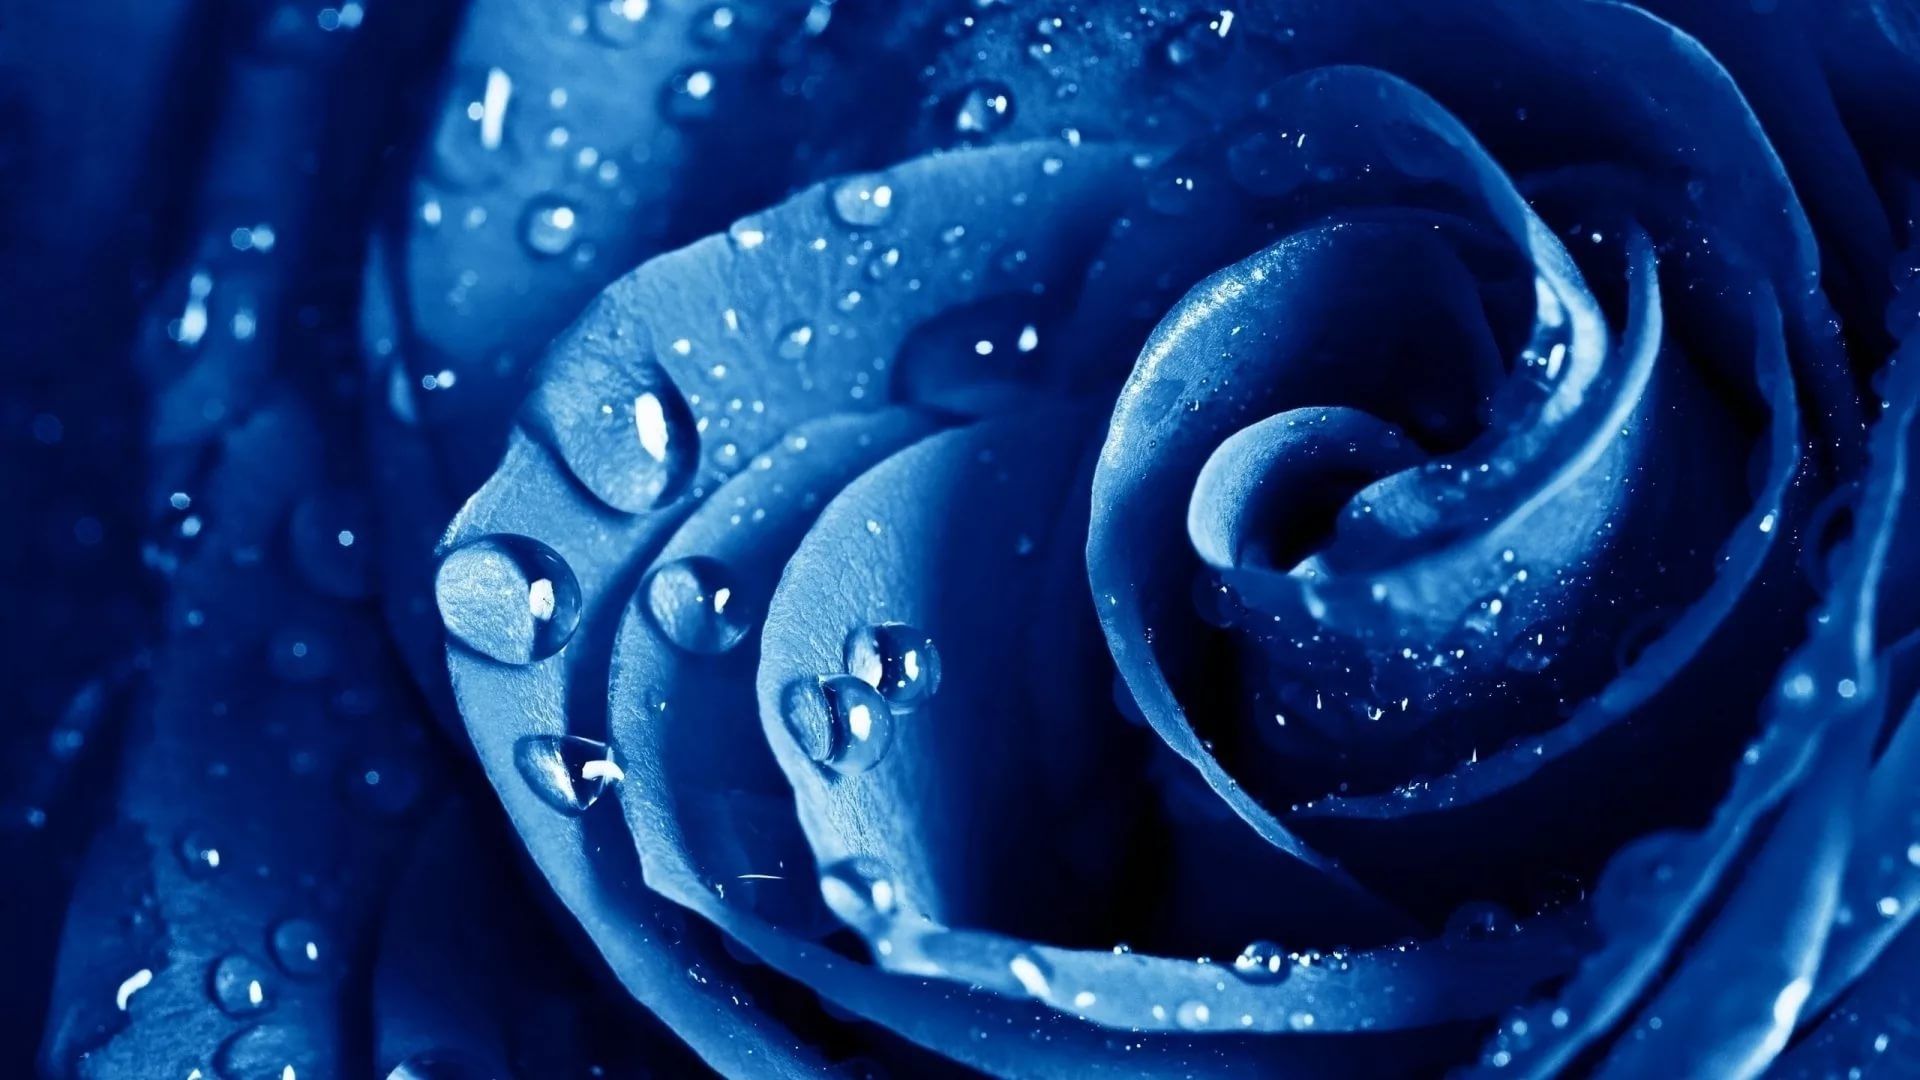 rosentapete hd,blau,wasser,rose,blaue rose,feuchtigkeit